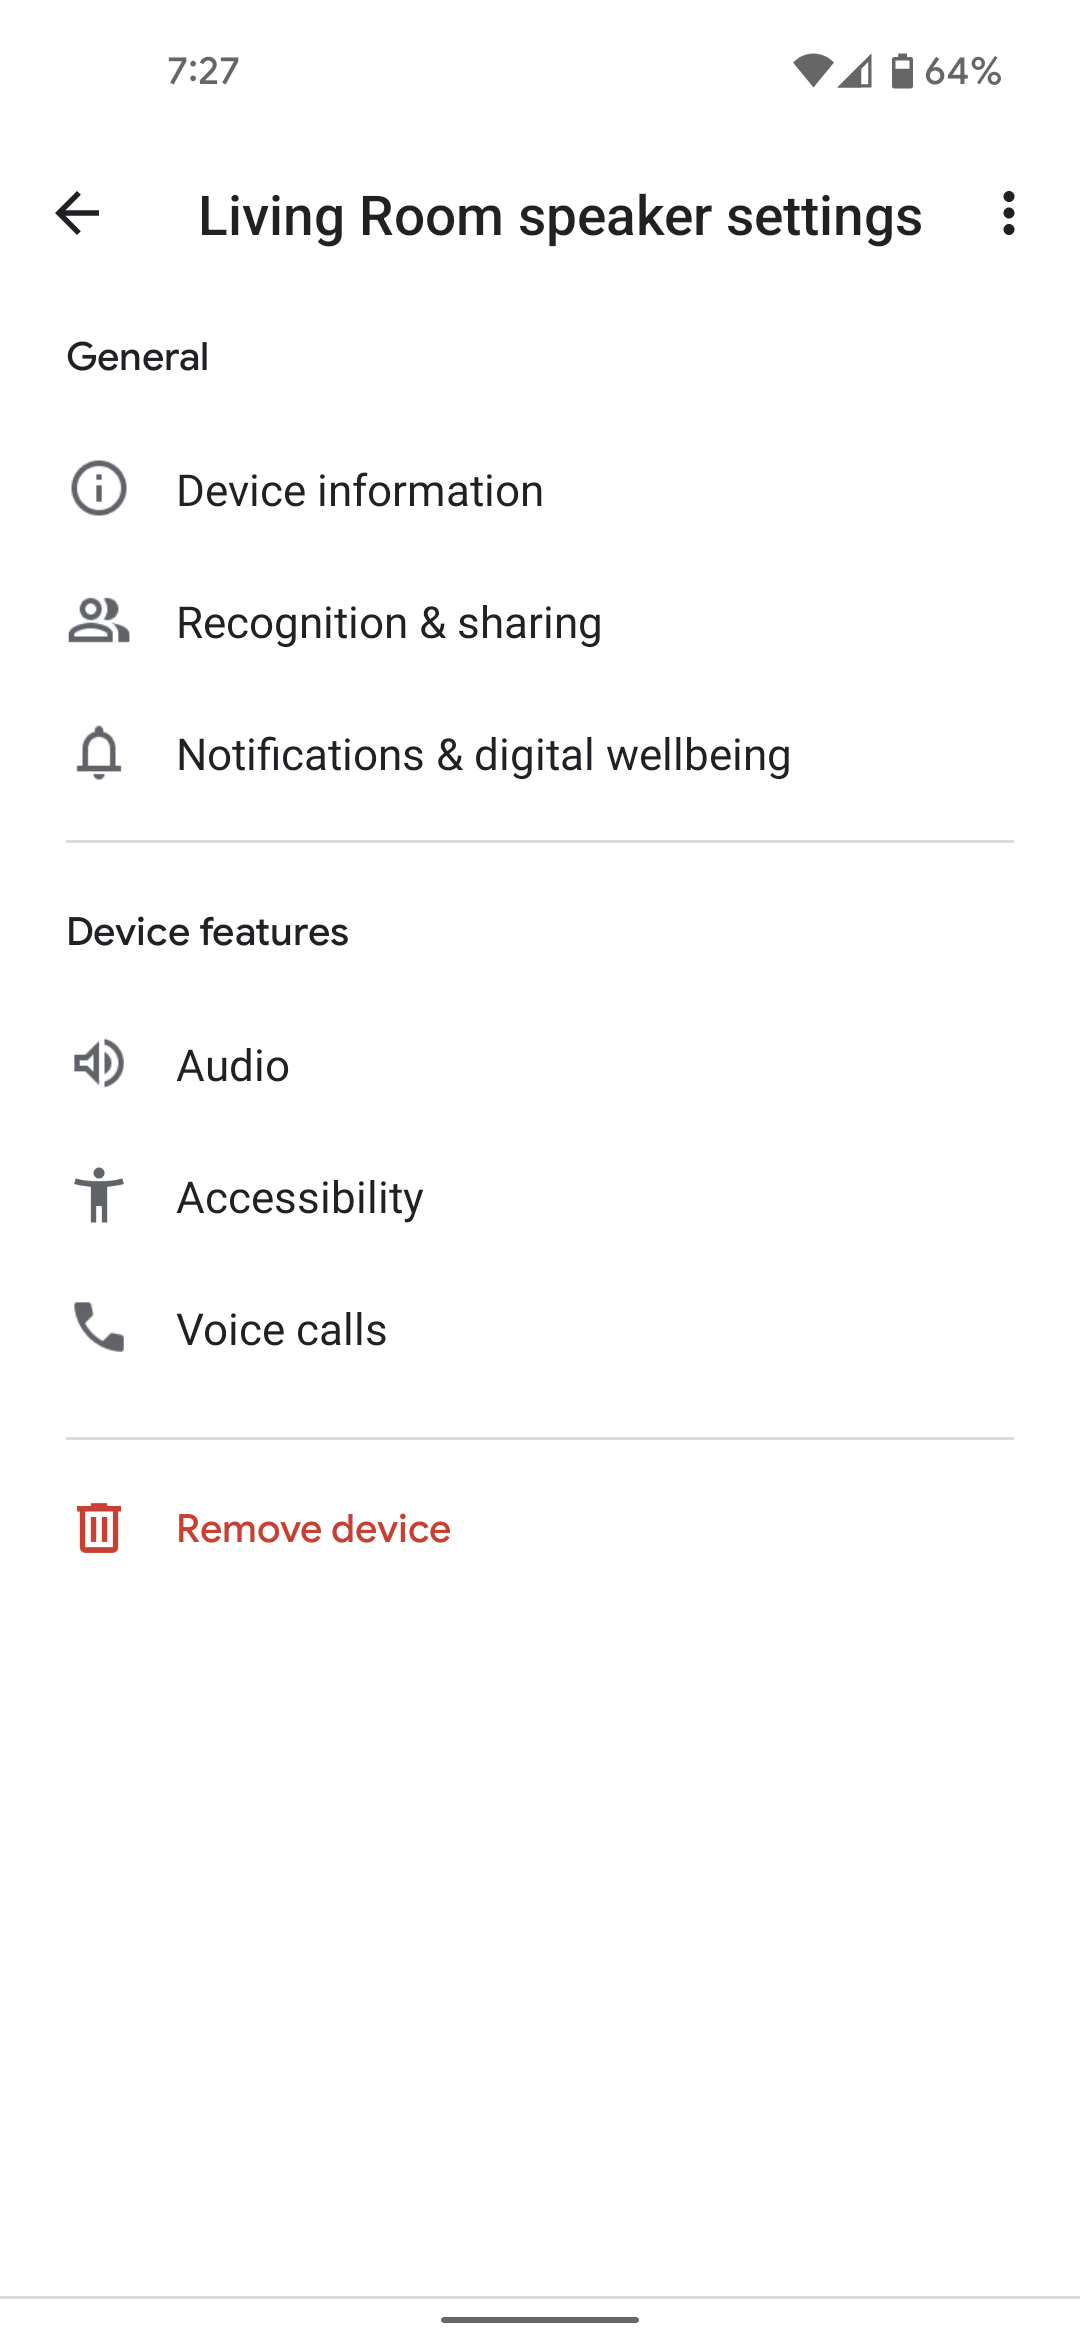 Google Nest Audio speaker settings in the Google Home app.